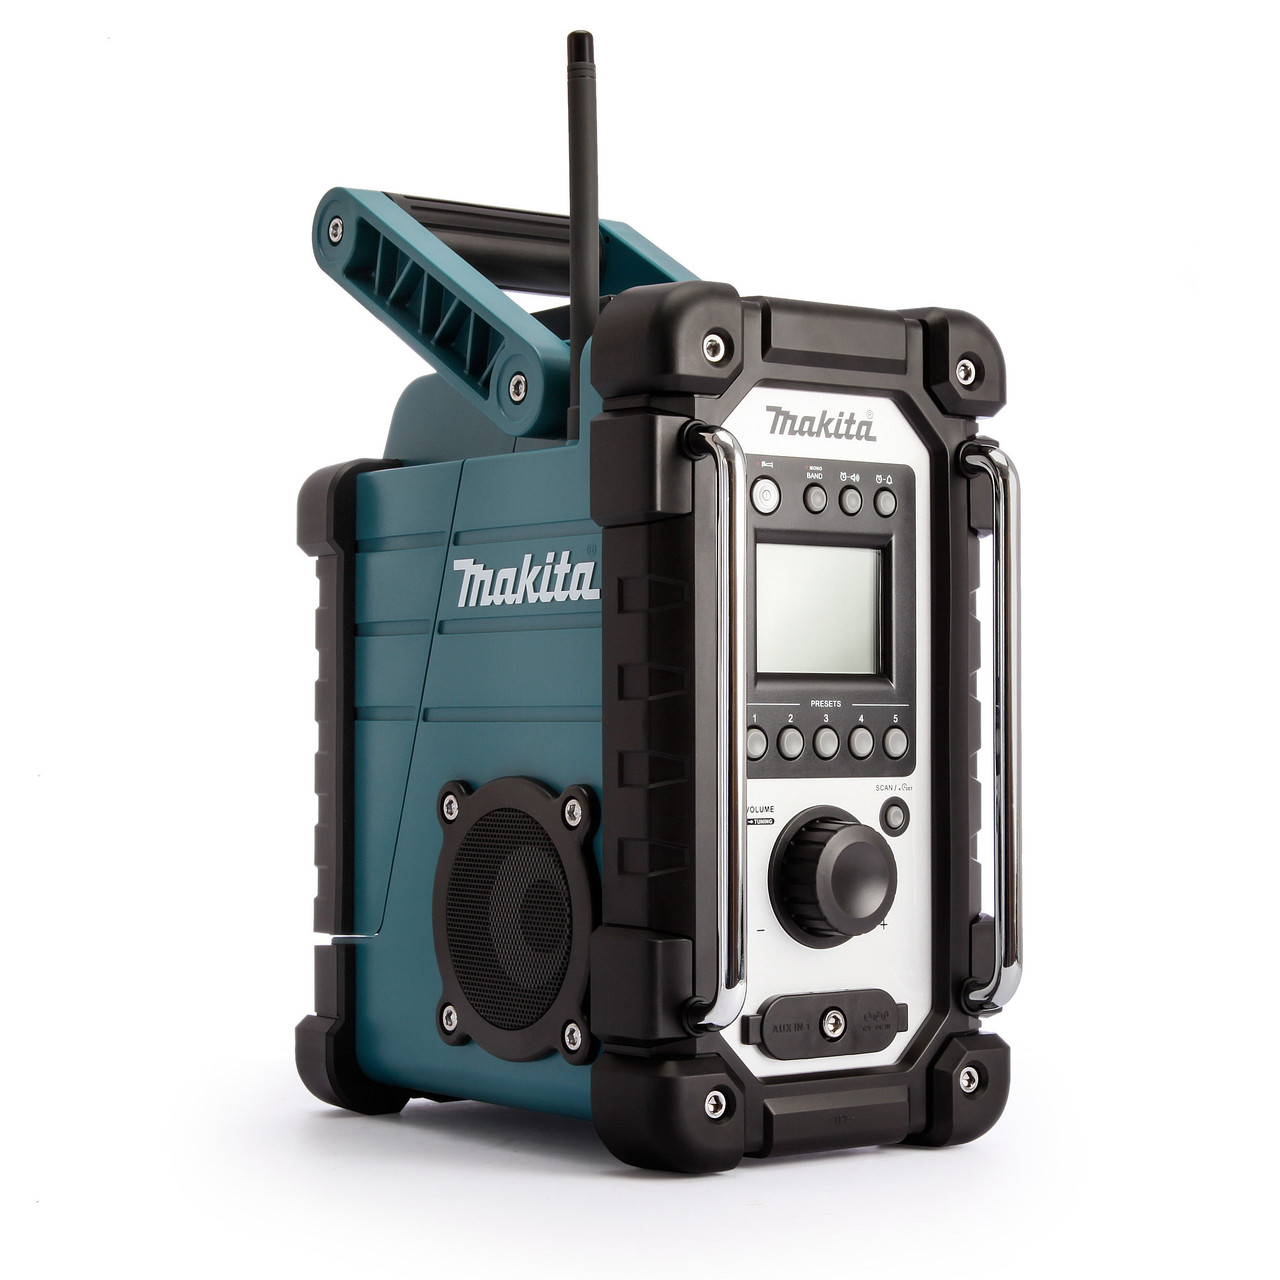 Makita DMR107 Jobsite Radio 7.2 - 18v battery range Or Mains Powered